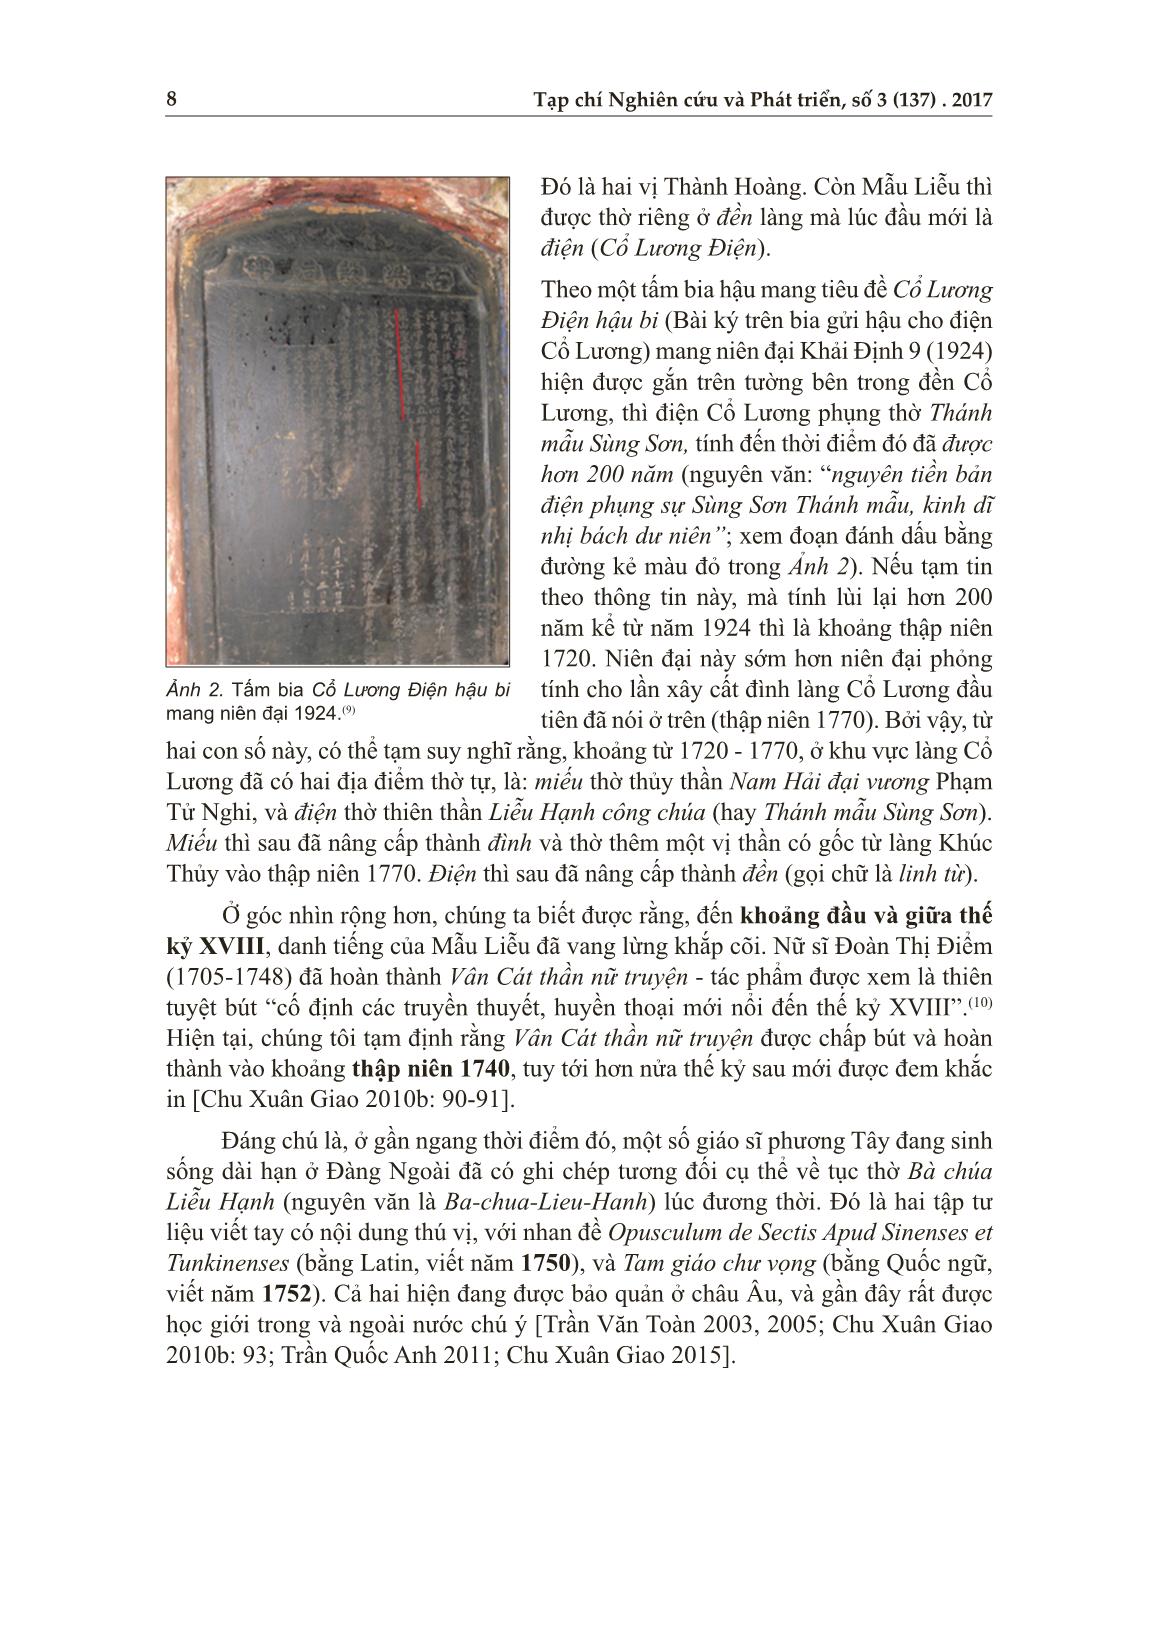 Hình ảnh Mẫu Liễu và phong trào dân tộc đầu thế kỷ XX: Trường hợp trí thức khoa bảng Trần Tán Bình với câu đối dâng năm 1922 cho đền Cổ Lương trang 6